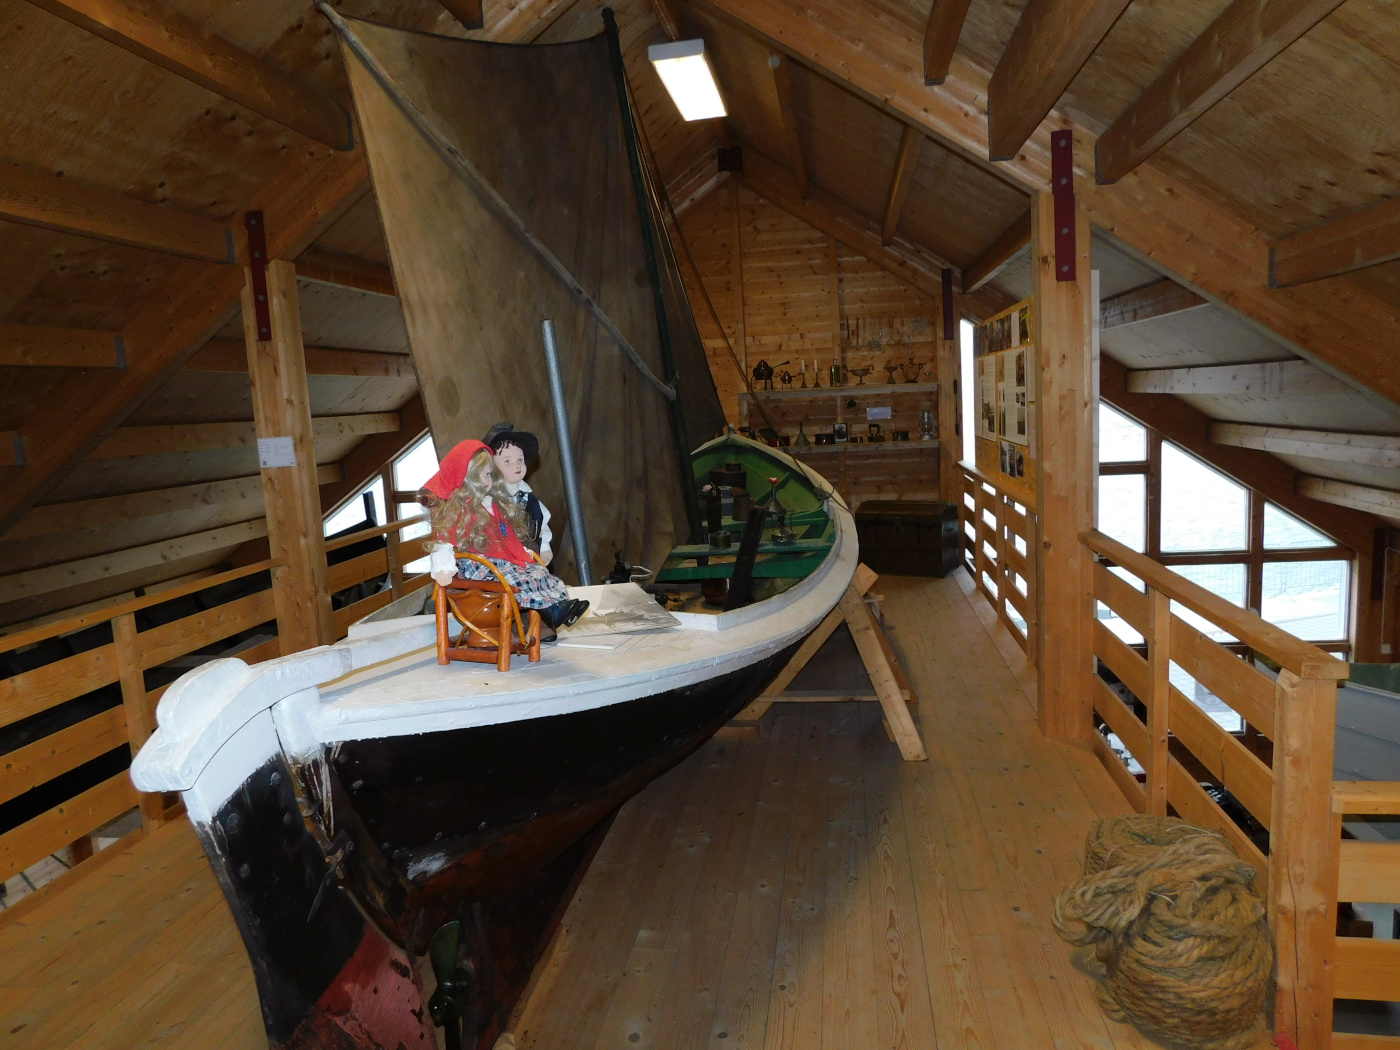 Utstillinga om Dei Båtreisande, der båten er utgangspunktet og sentral i utstillinga.